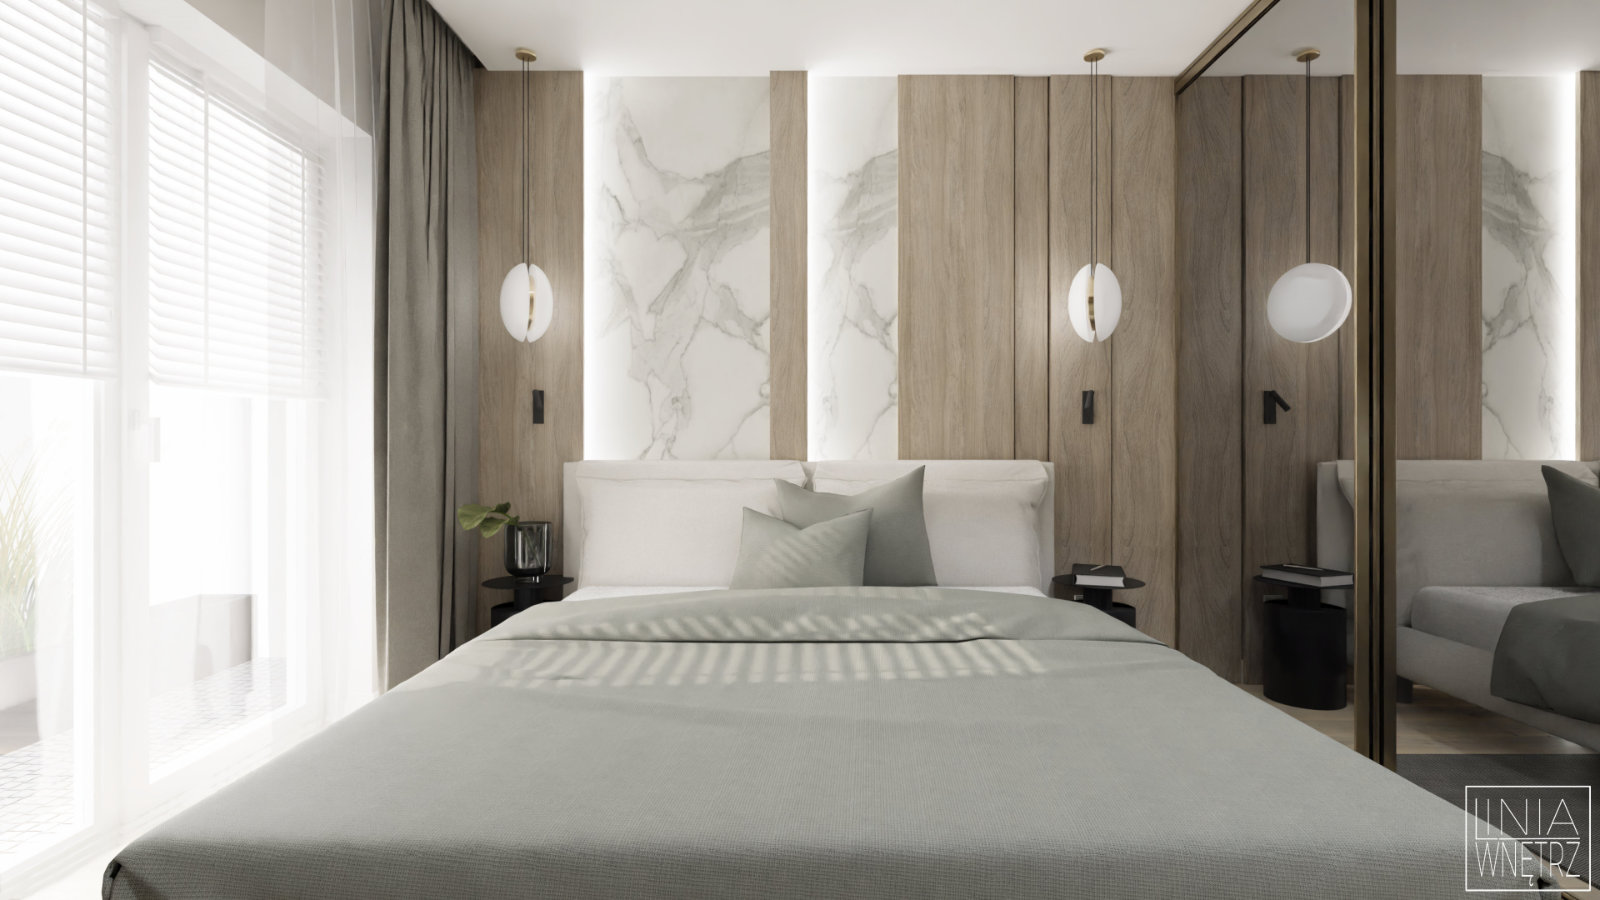 sypialnia-elegancka-klasyczna-szlachetne-materialy-drewno-marmur-projekt-linia-wnetrz-slaskie